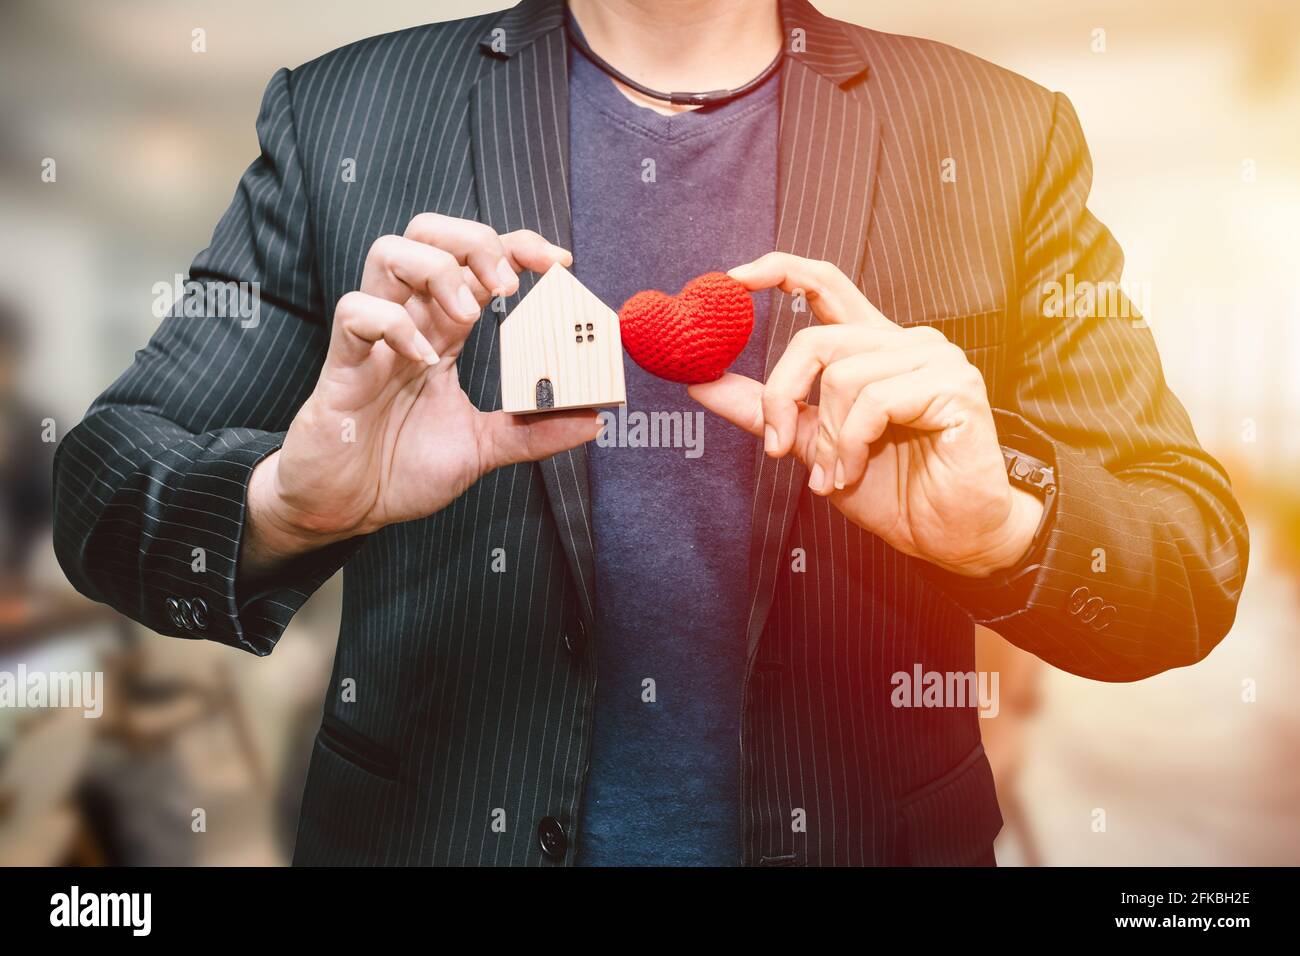 homme main tenant une petite maison et signe hart pour j'adore le concept de service d'hébergement pour les affaires ou la maison Banque D'Images